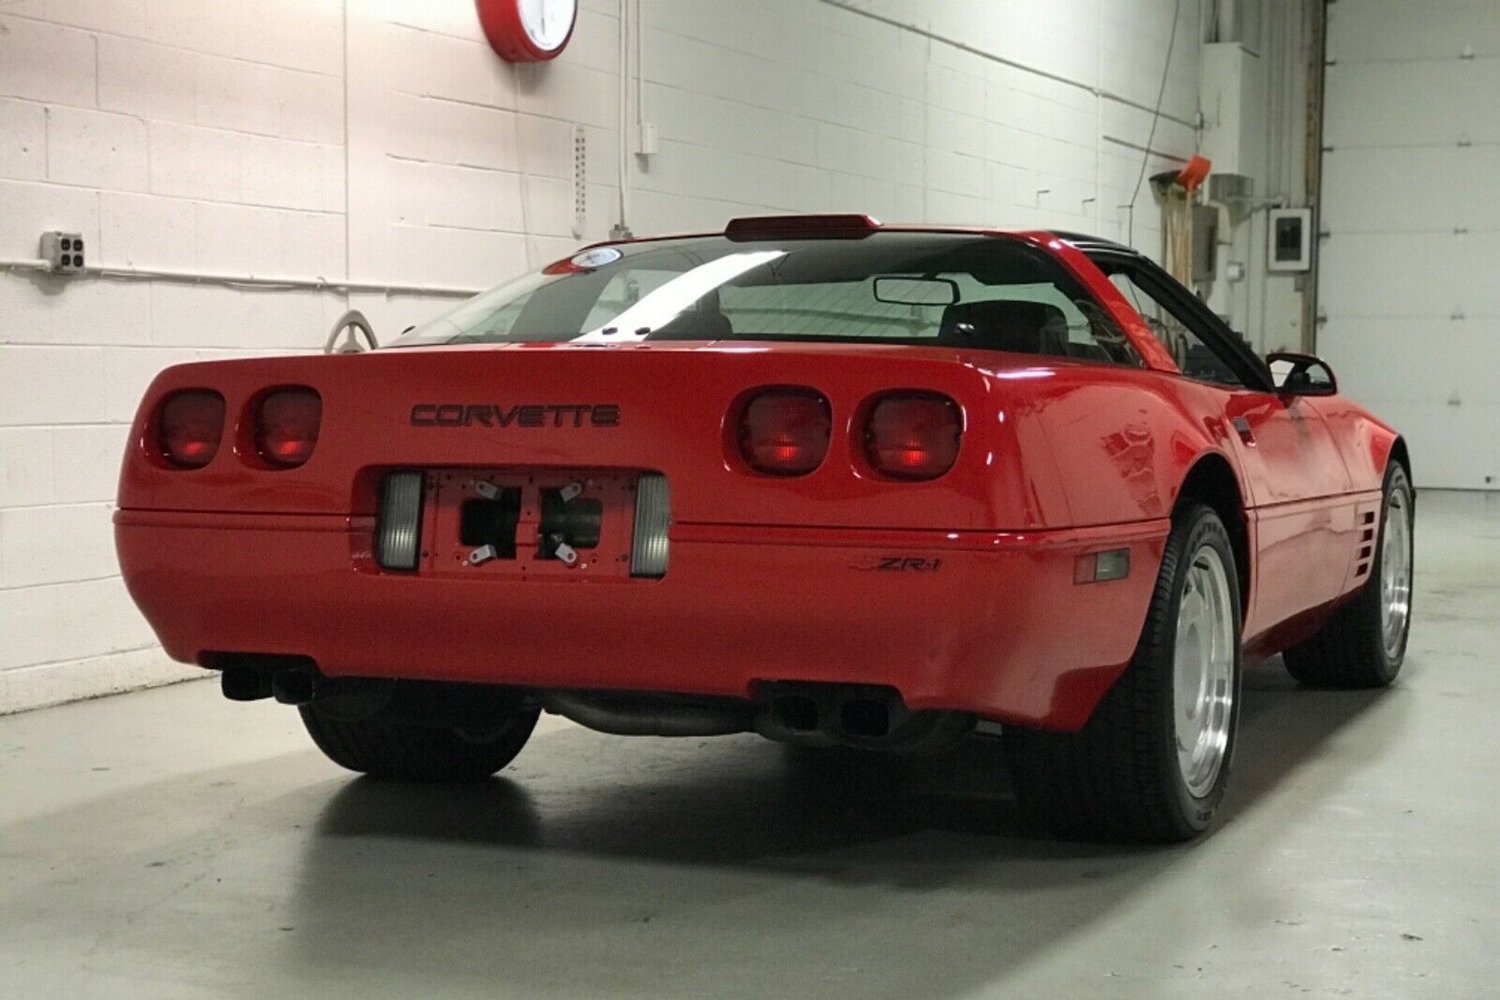 30 évig várt az első tulajdonosra ez a piros Corvette 4